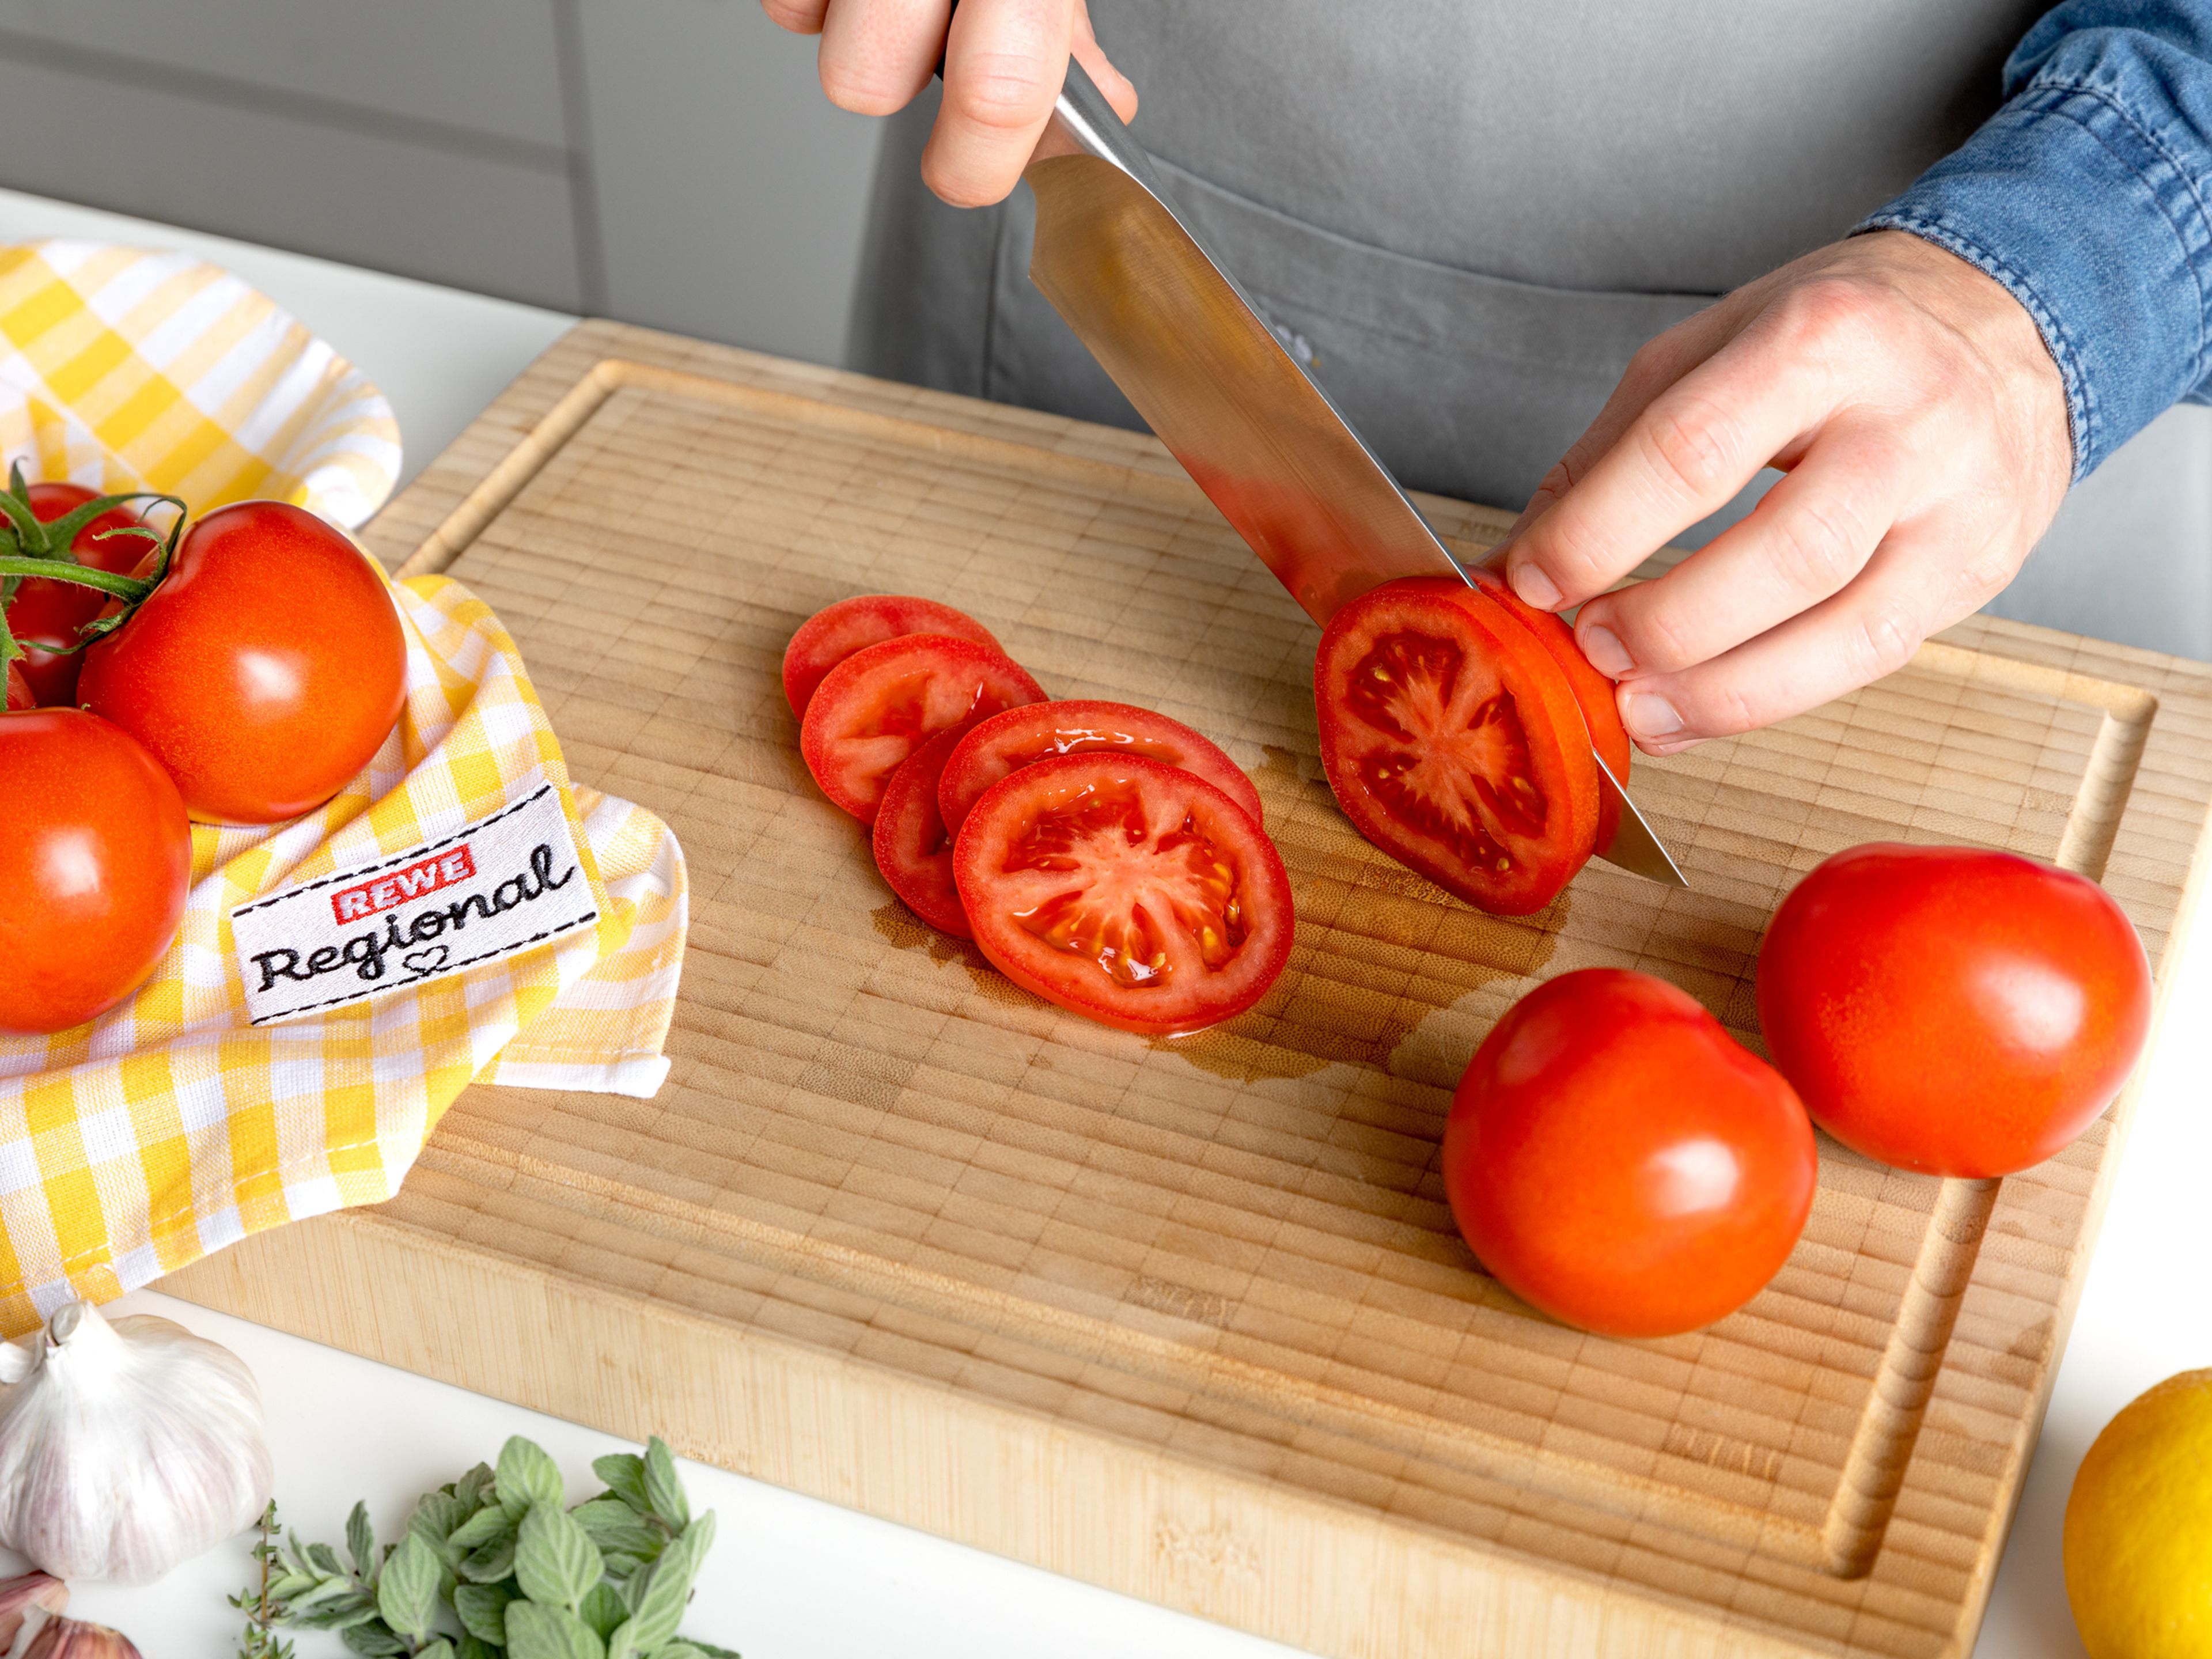 Backofen auf190°C vorheizen. Schalotte und Knoblauch schälen und in dünne Scheiben schneiden. Tomaten ebenfalls in Scheiben schneiden. Thymian- und Oreganoblätter grob hacken.